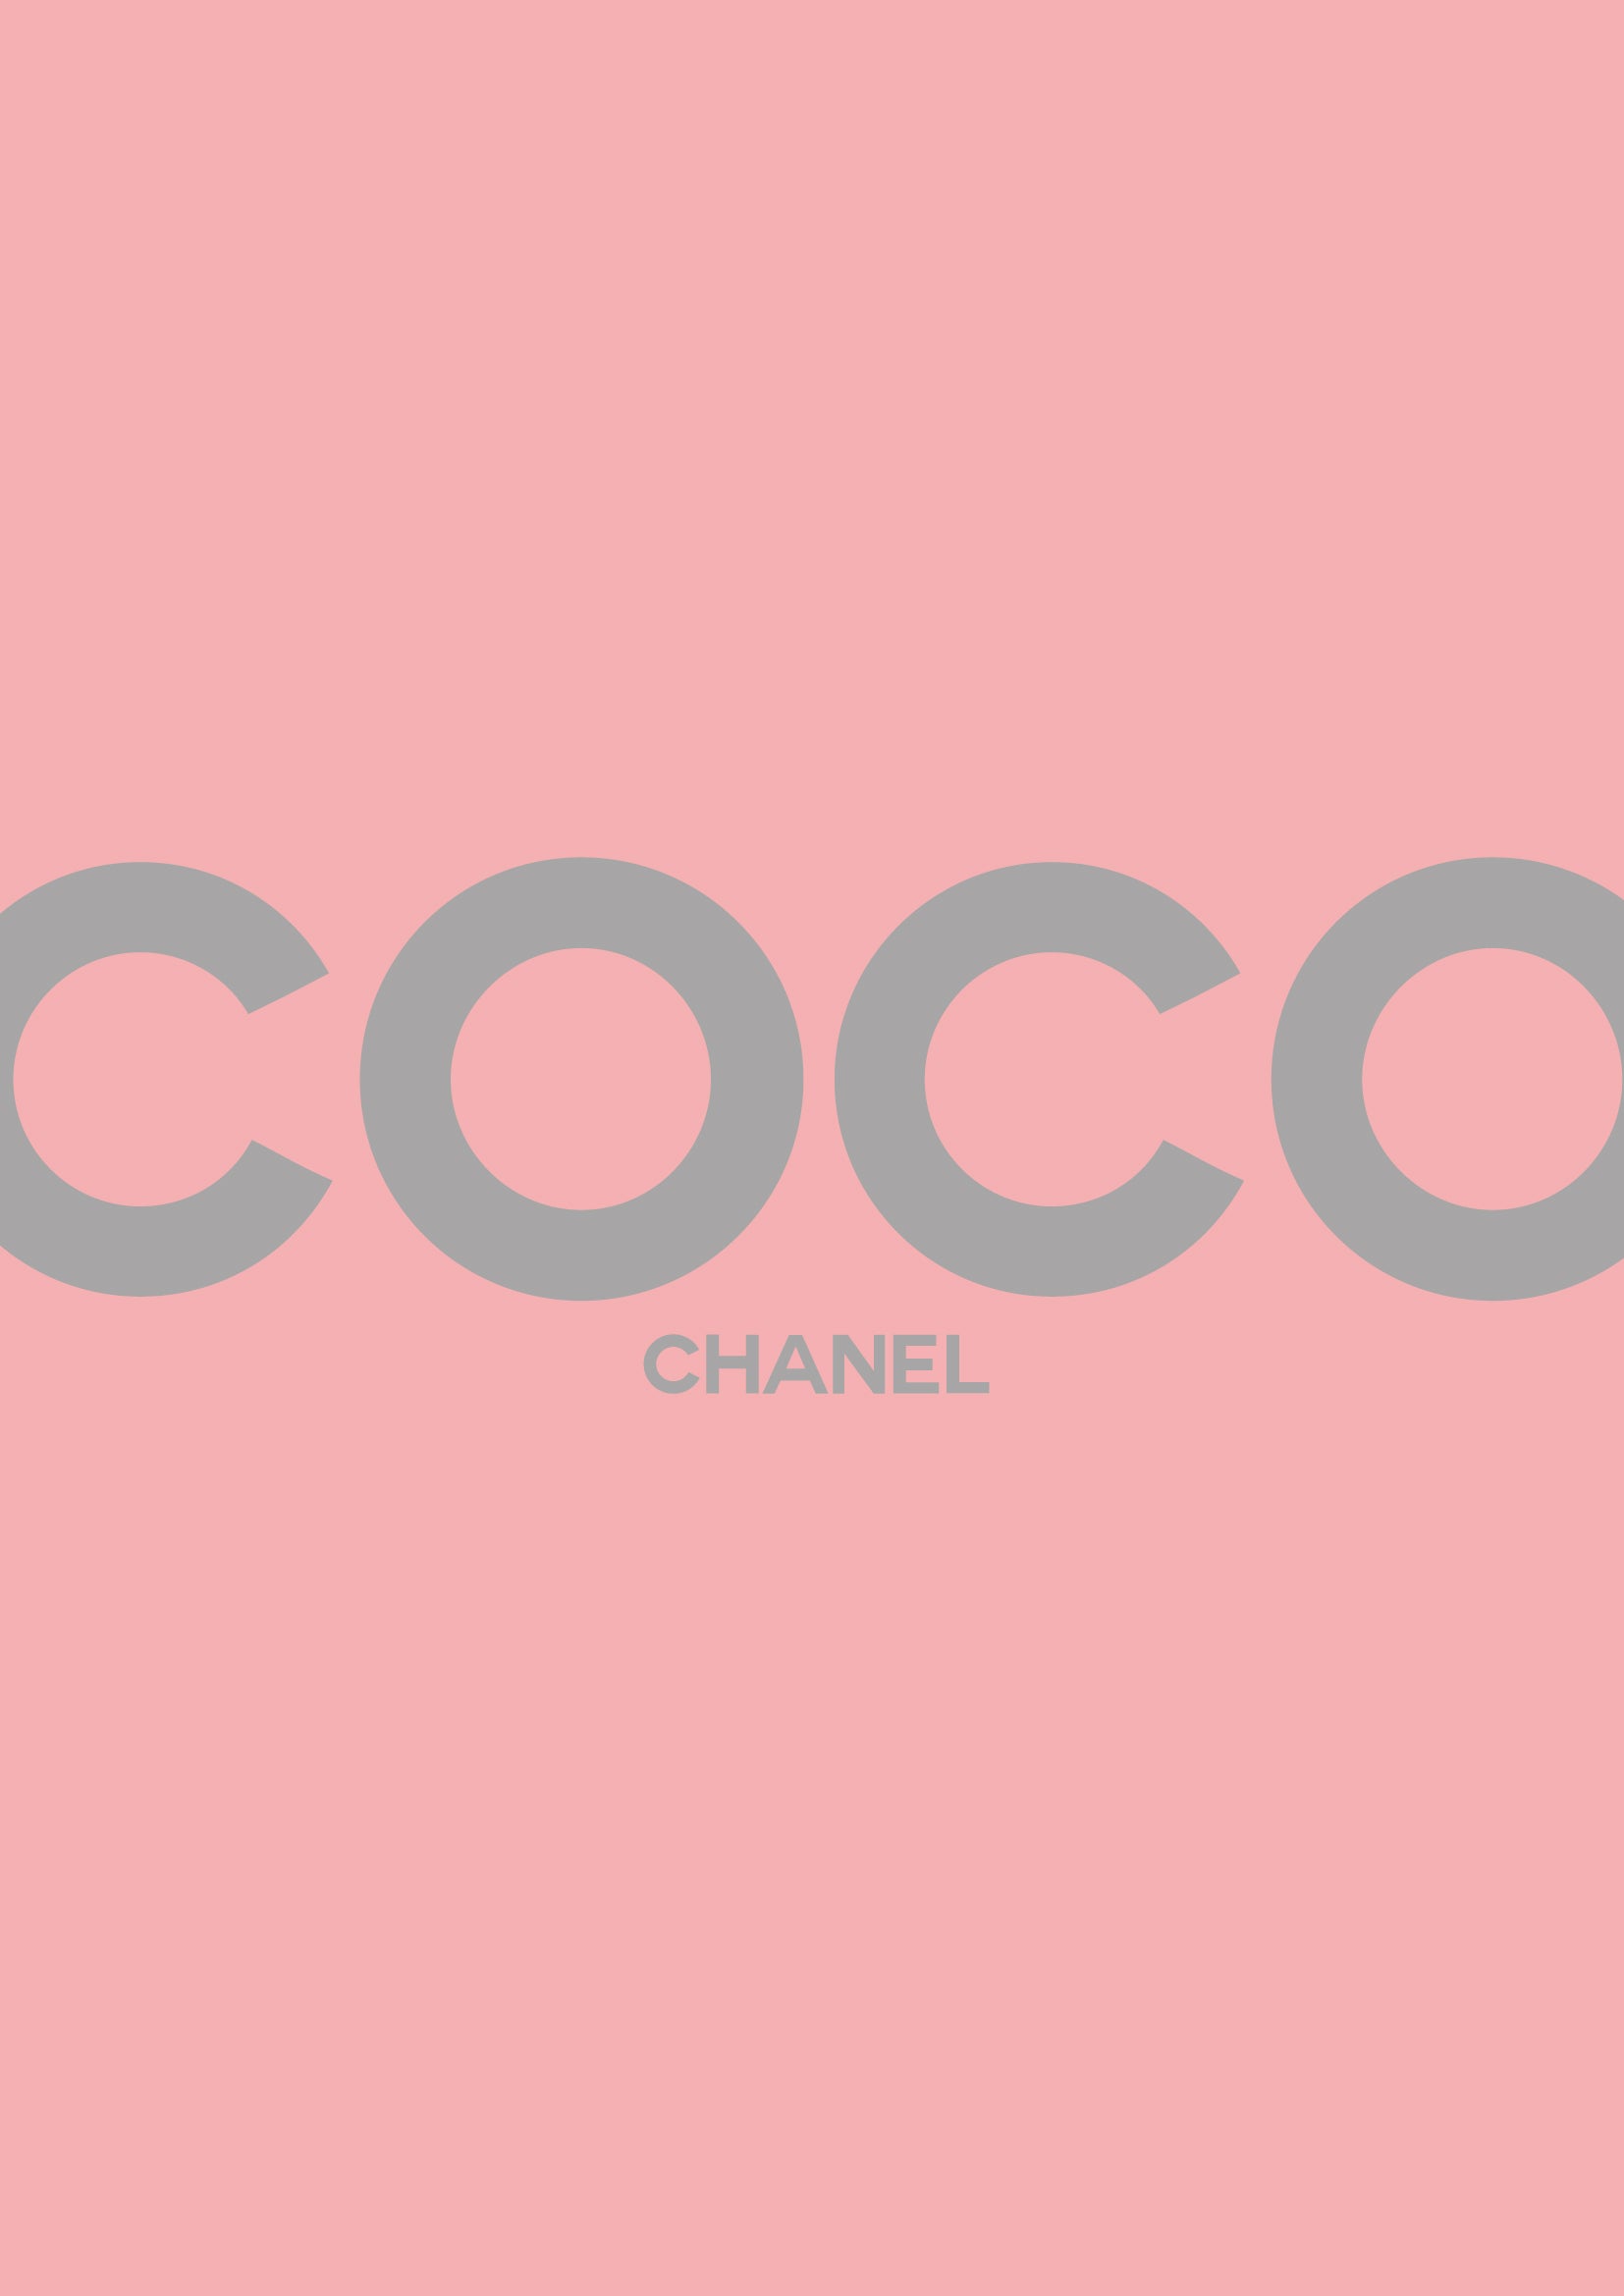 Lumartos Coco Chanel Large Quote Print